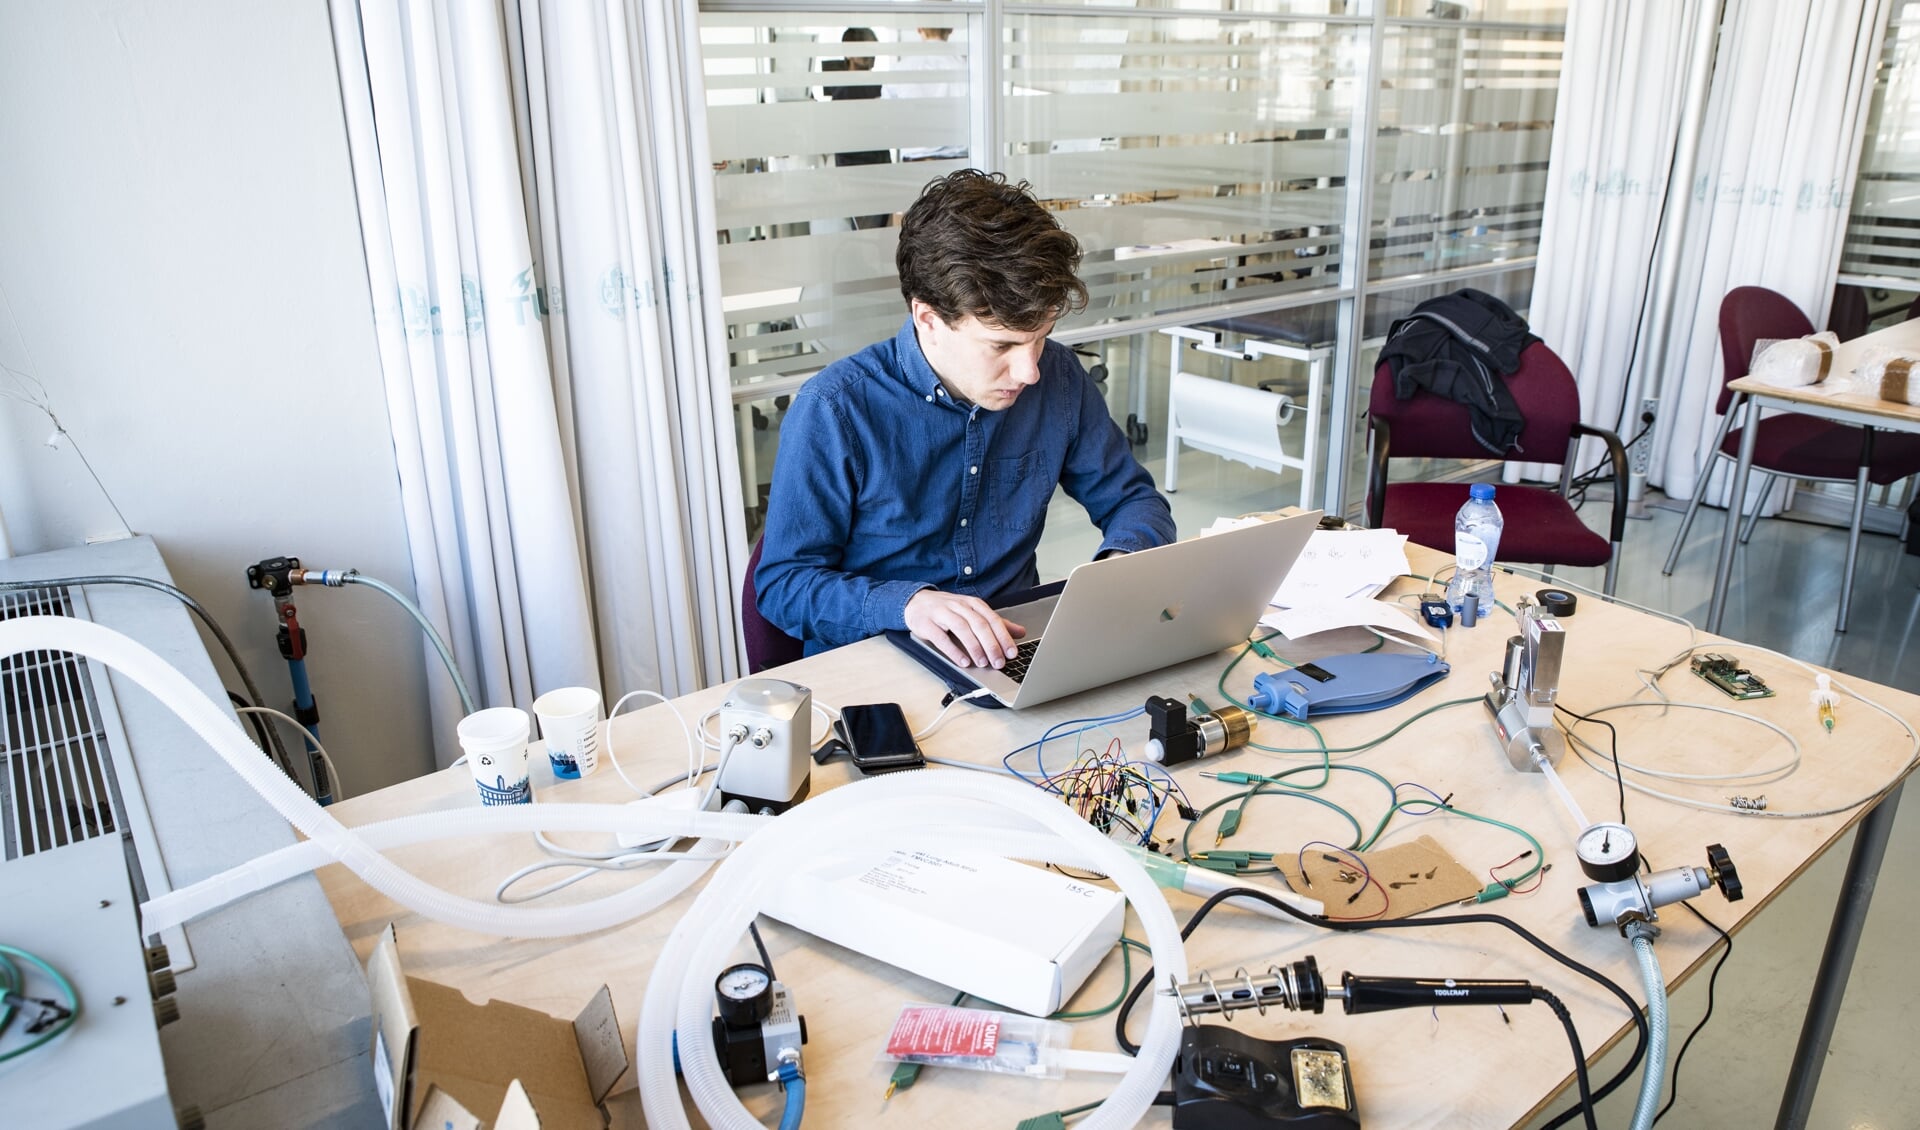 De studenten van de TU Delft werken hard aan de realisatie van beademingsapparatuur